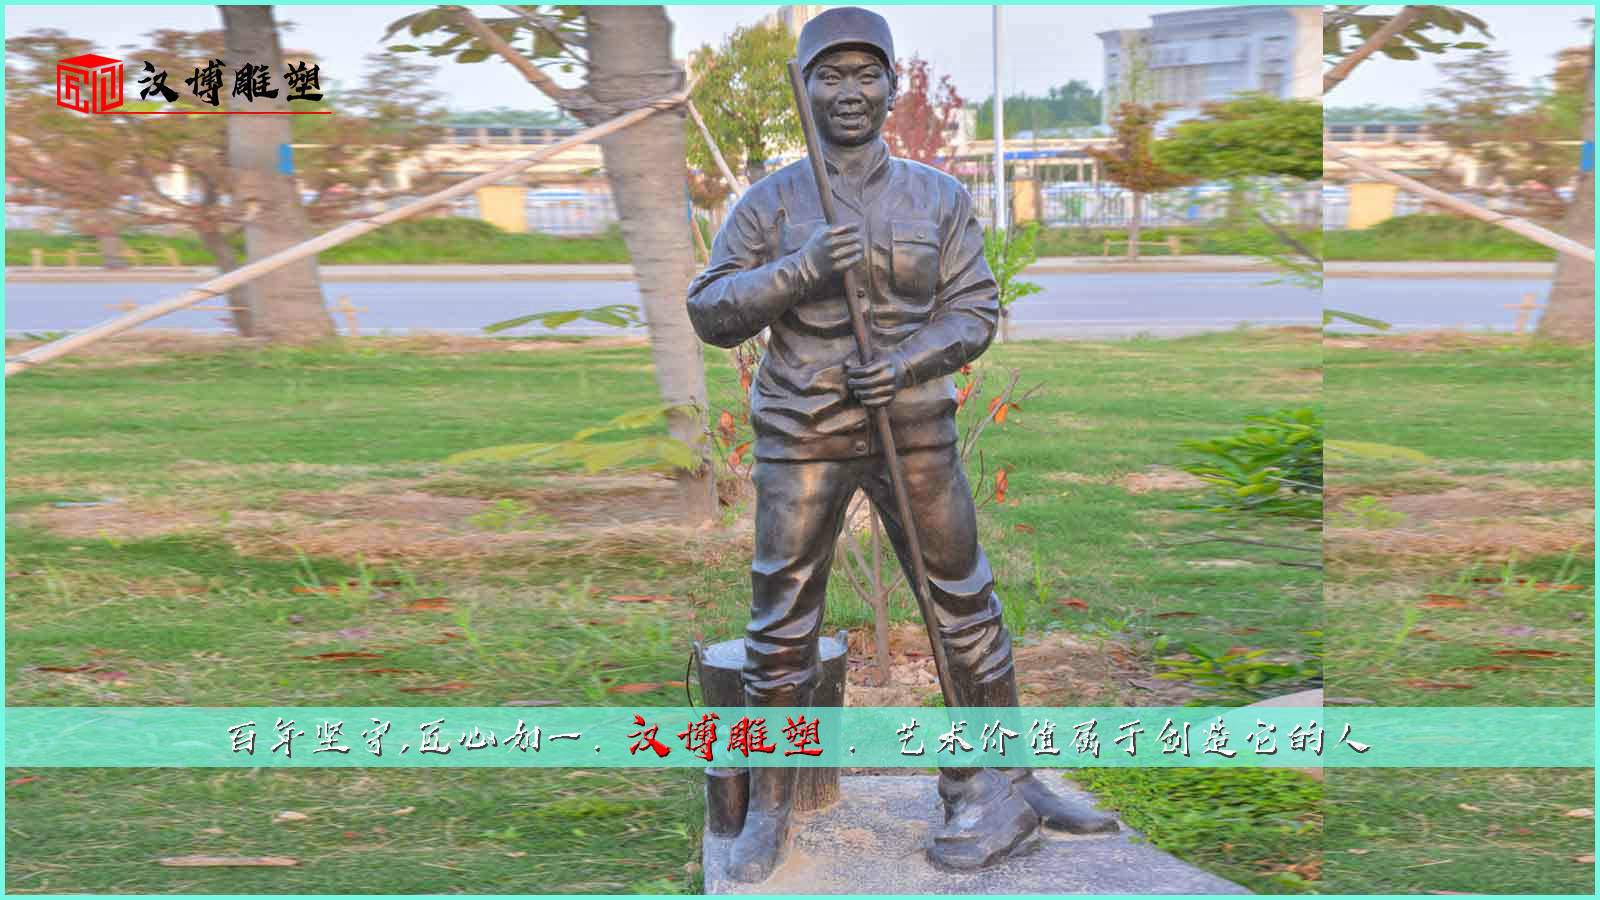 劳动主题铜雕,现代工艺雕像,公园景观雕塑